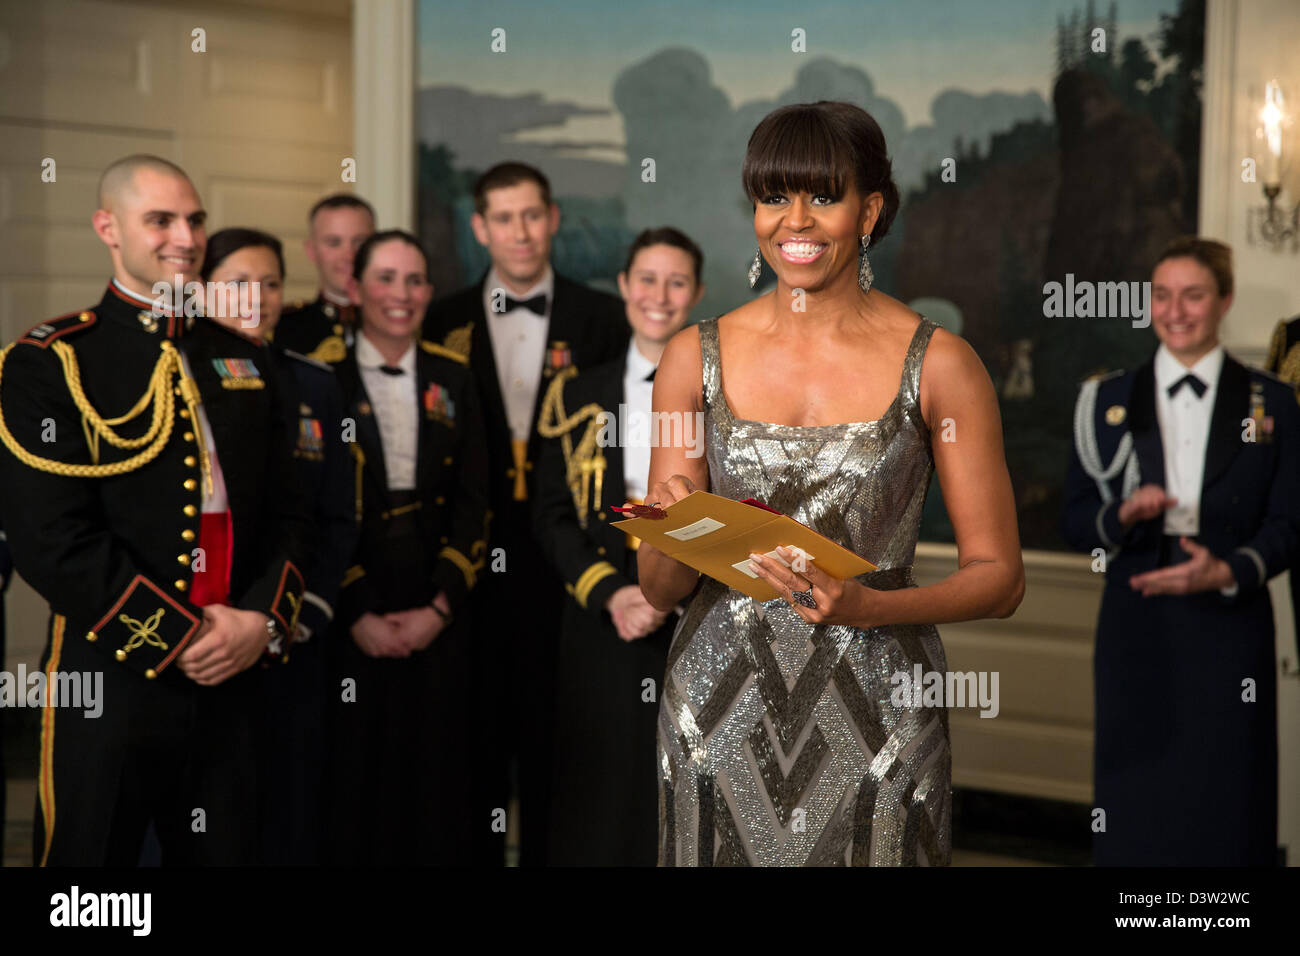 Washington DC, USA. 24. Februar 2013. UNS, die First Lady Michelle Obama kündigt den Oscar als beste Bild des Films Argo live aus der diplomatischen Room des weißen Hauses 24. Februar 2013 ausgezeichnet. Bildnachweis: White House Photo / Alamy Live News Stockfoto